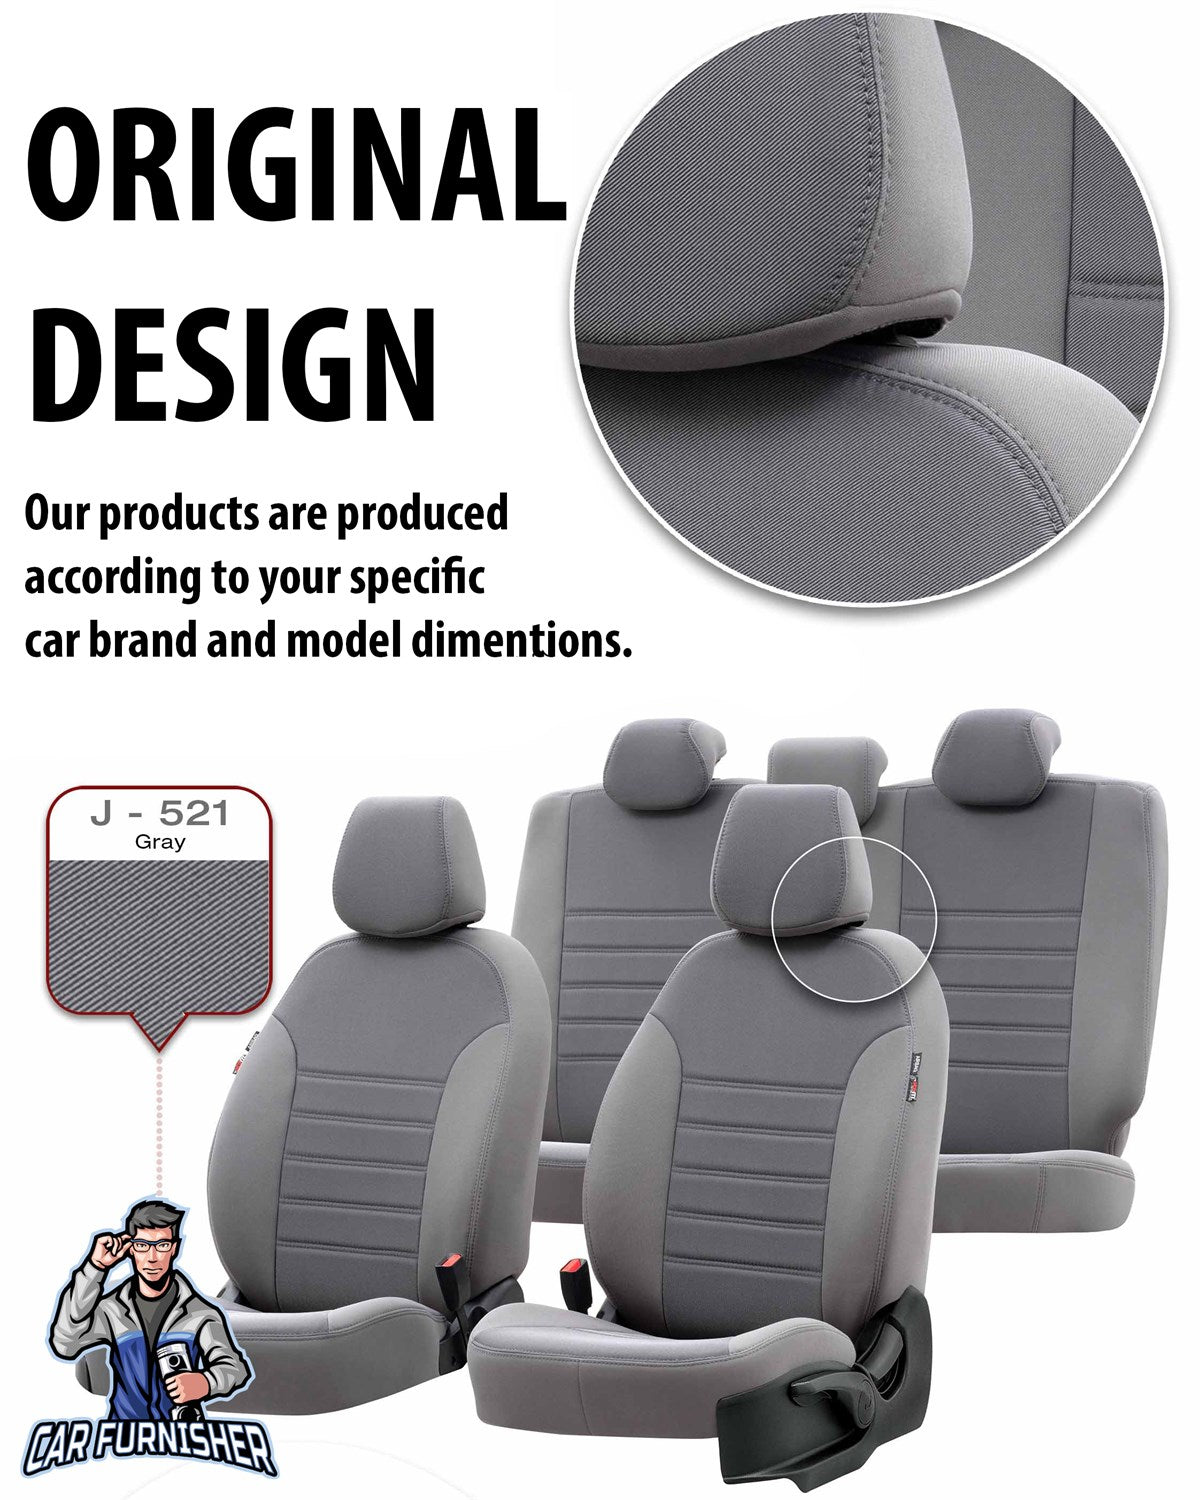 Renault Twingo Seat Cover Original Jacquard Design Beige Jacquard Fabric